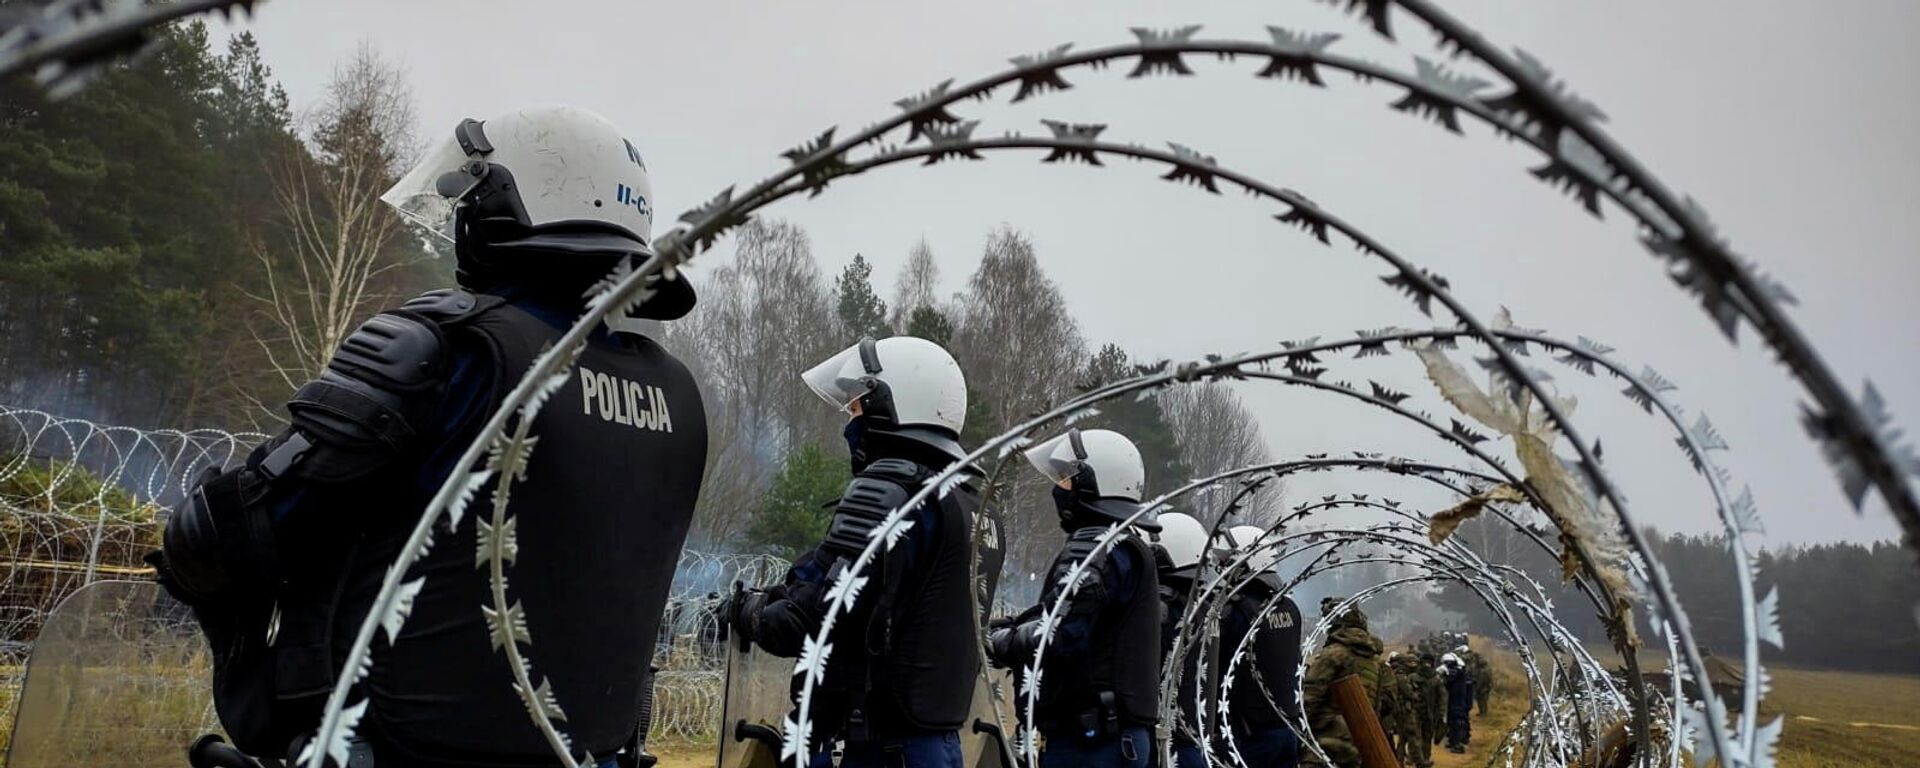 Guardas policiais poloneses na fronteira Polônia-Belarus perto de Kuznica, Polônia, 11 de novembro de 2021 - Sputnik Brasil, 1920, 13.11.2021